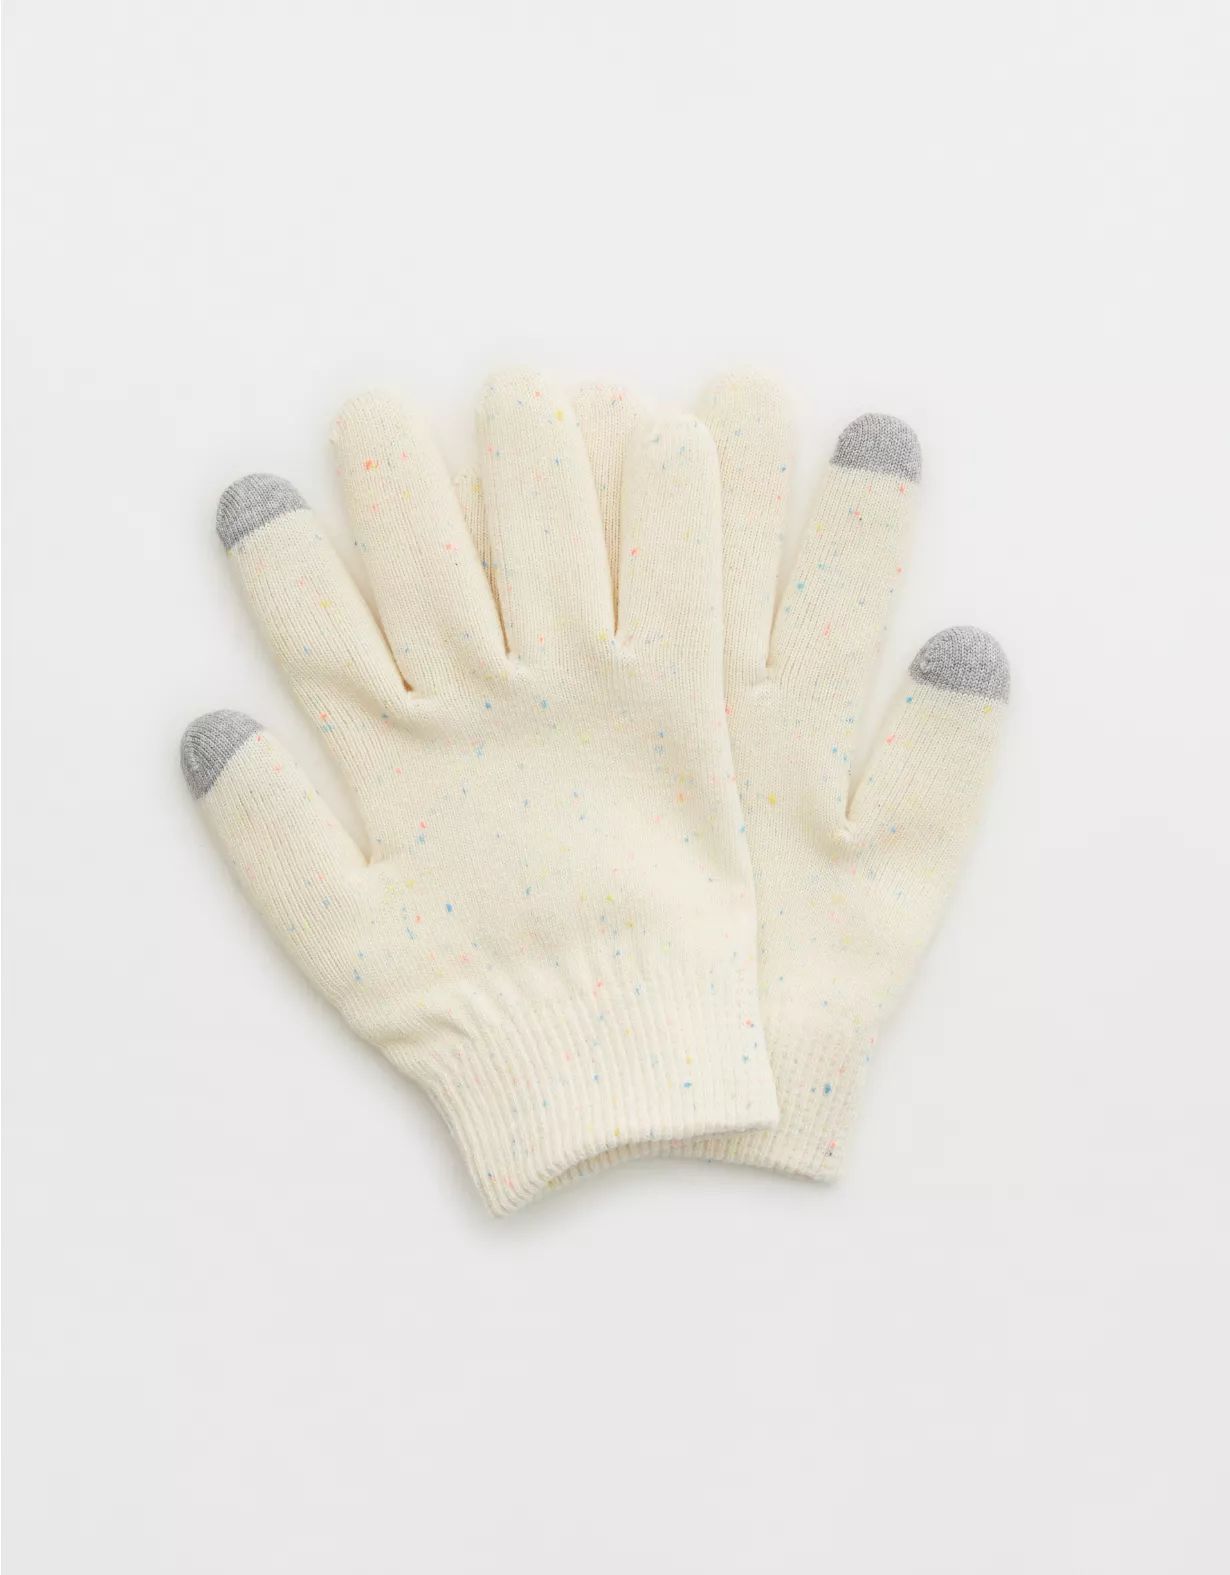 Kitsch Moisturizing Spa Gloves | Aerie